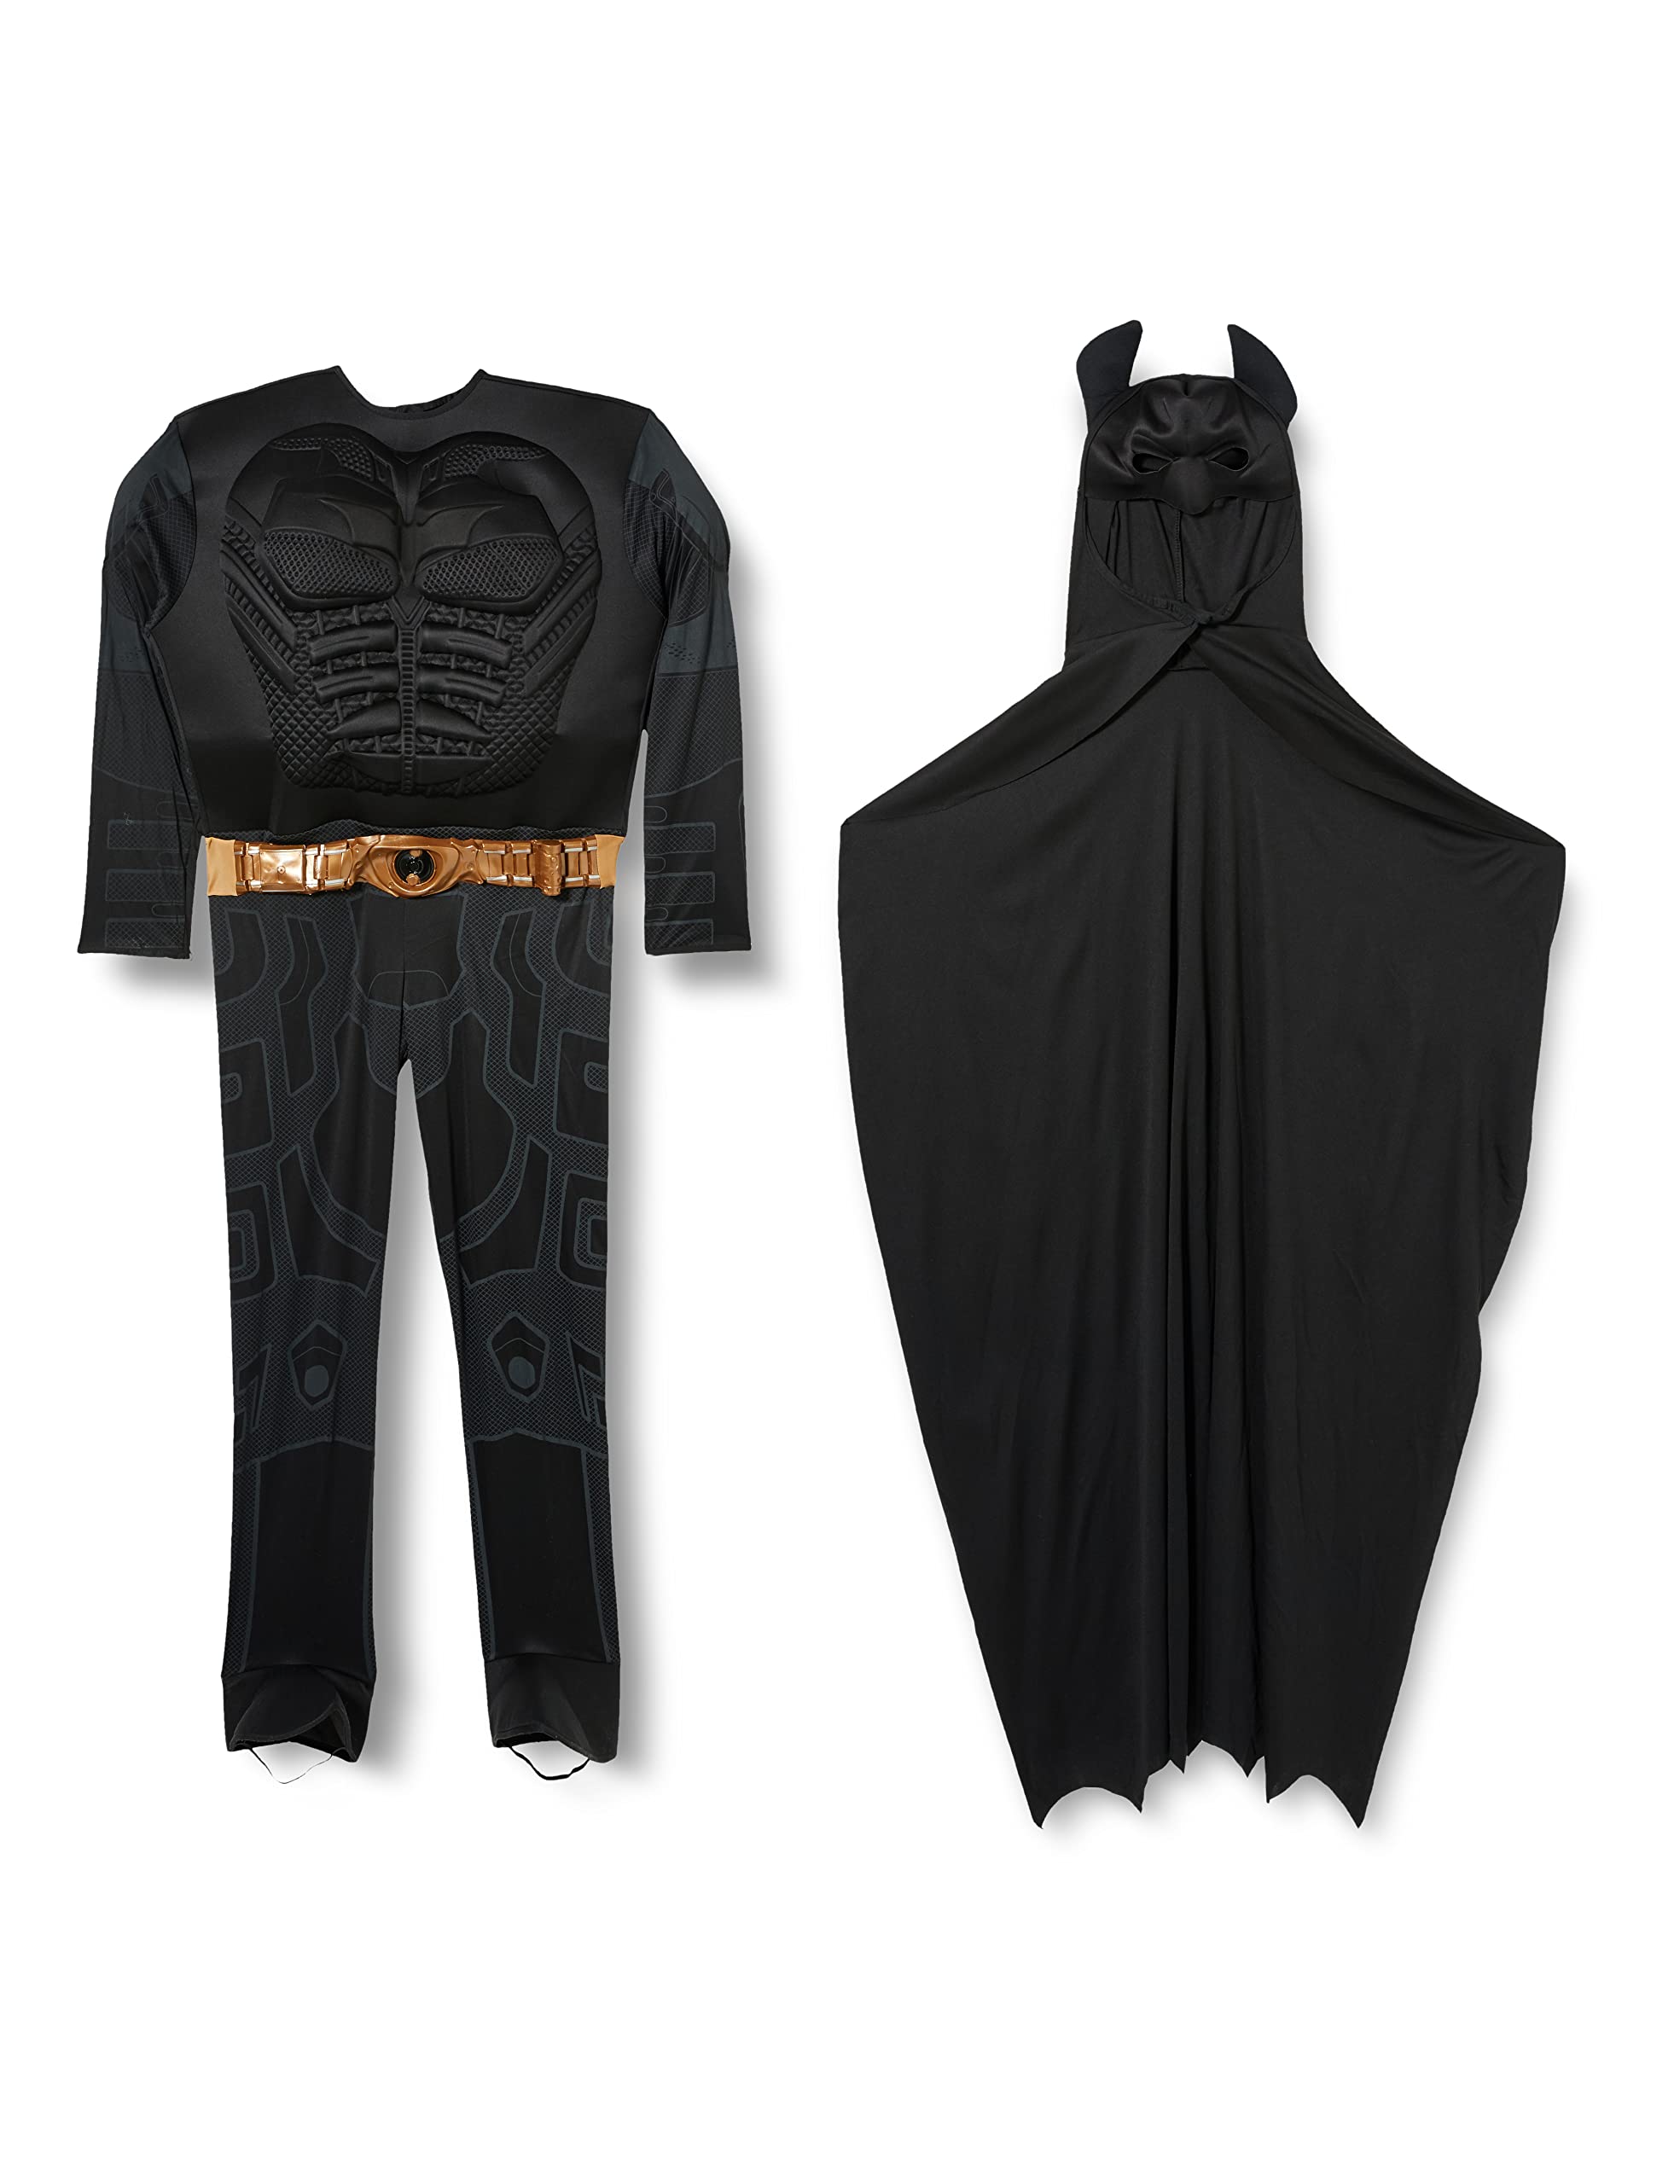 Rubie's Batman: The Dark Knight Trilogy Adult Batman Costume